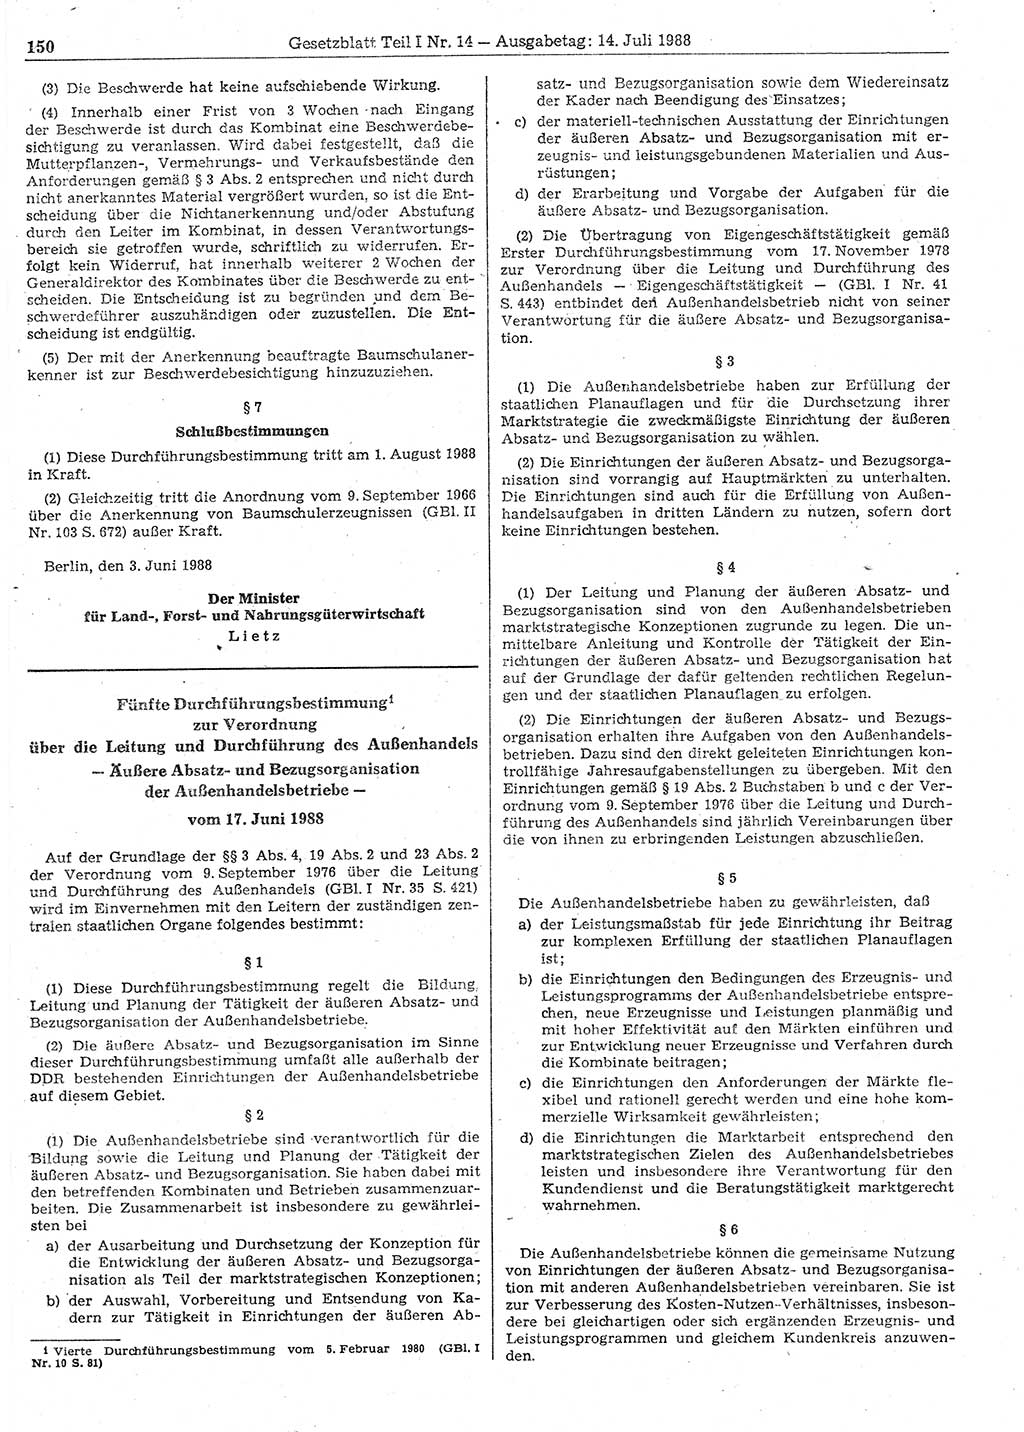 Gesetzblatt (GBl.) der Deutschen Demokratischen Republik (DDR) Teil Ⅰ 1988, Seite 150 (GBl. DDR Ⅰ 1988, S. 150)